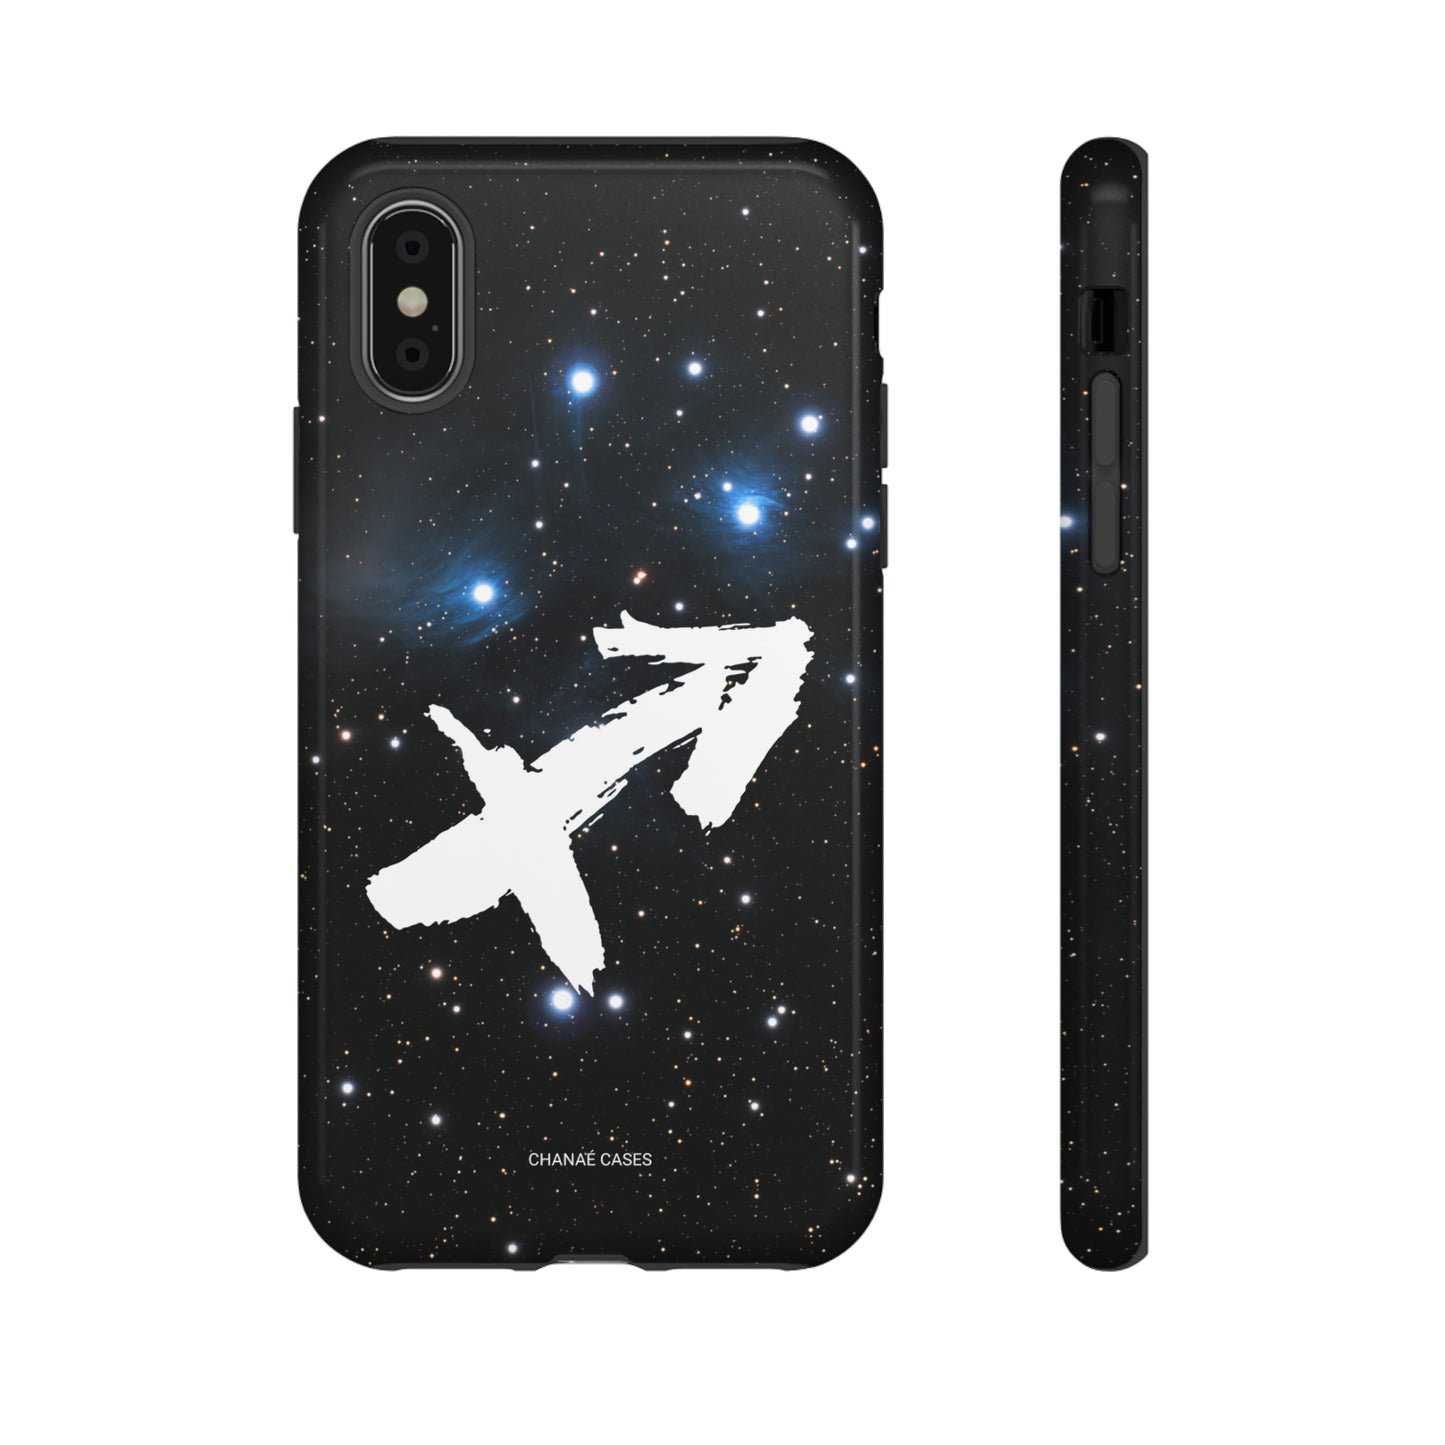 Sagittarius iPhone "Tough" Case (Black)